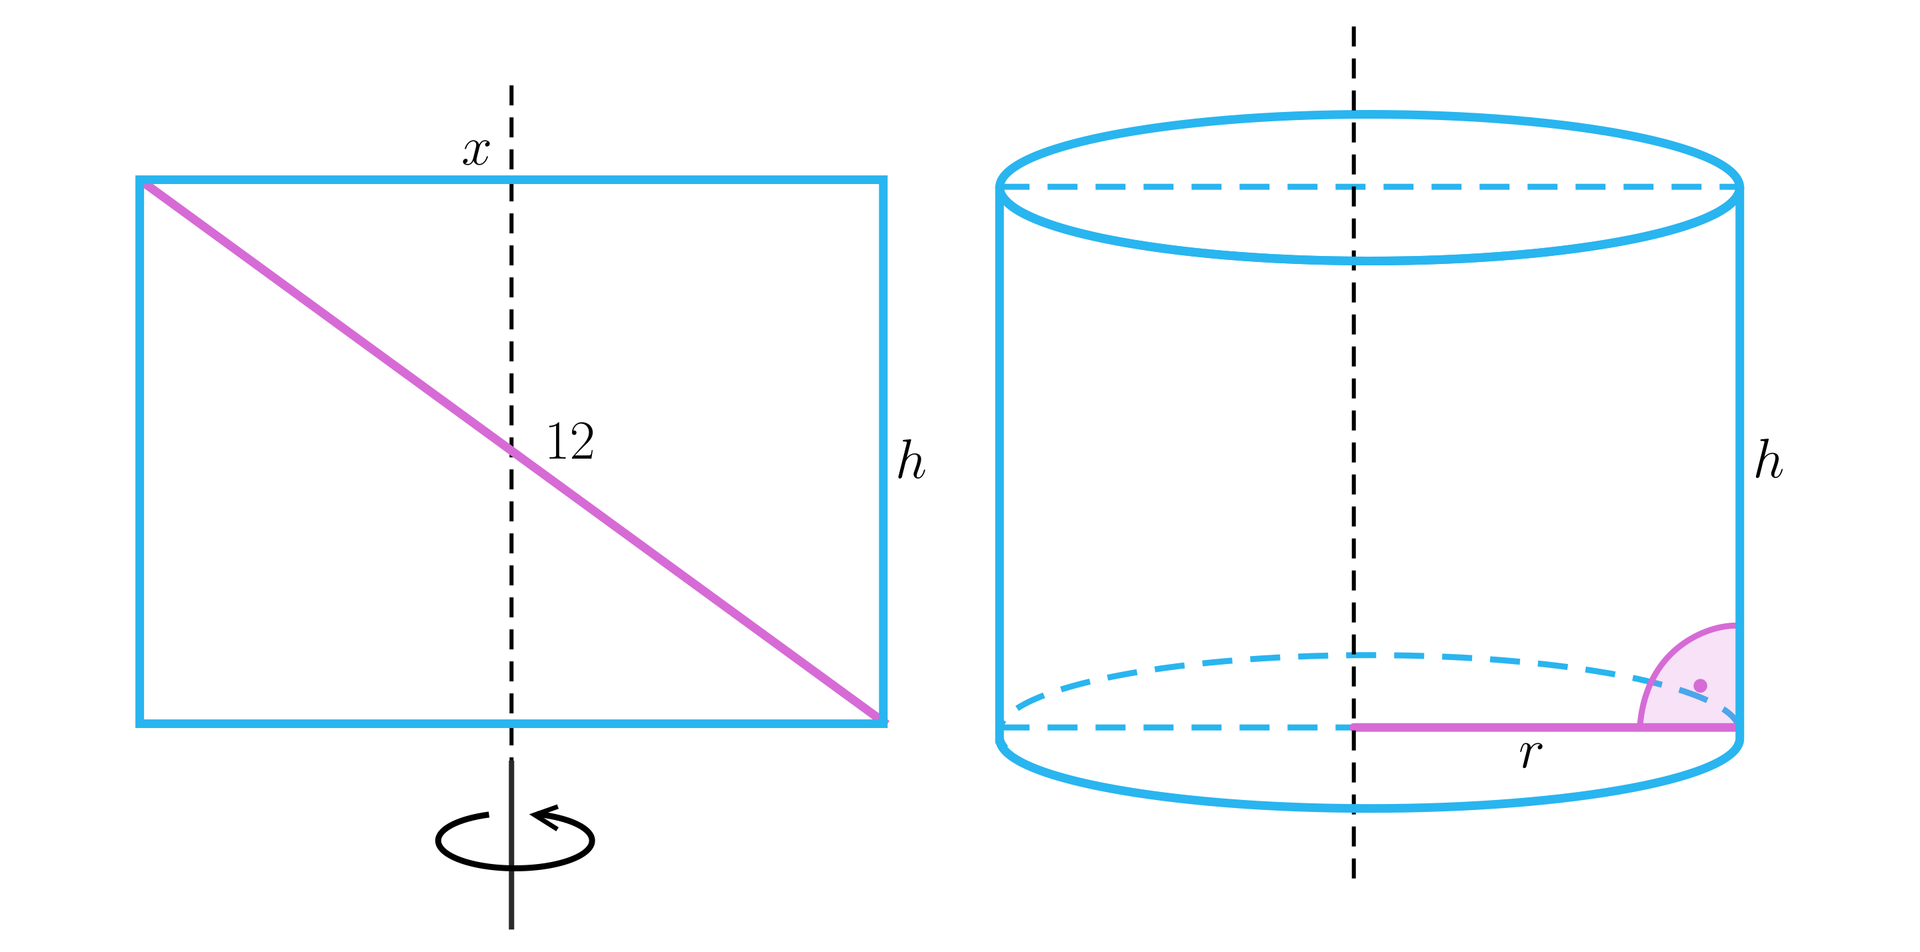 Ilustracja przedstawia prostokąt oraz walec powstały poprzez obrót pierwszej figury wokół osi symetrii przechodzącej przez środki dłuższych boków. Długość dłuższego boku prostokąta wynosi x, długość krótszego to h, natomiast jego przekątna ma długość dwanaście. Walec posiada promień podstawy o długości r oraz wysokość o długości h.